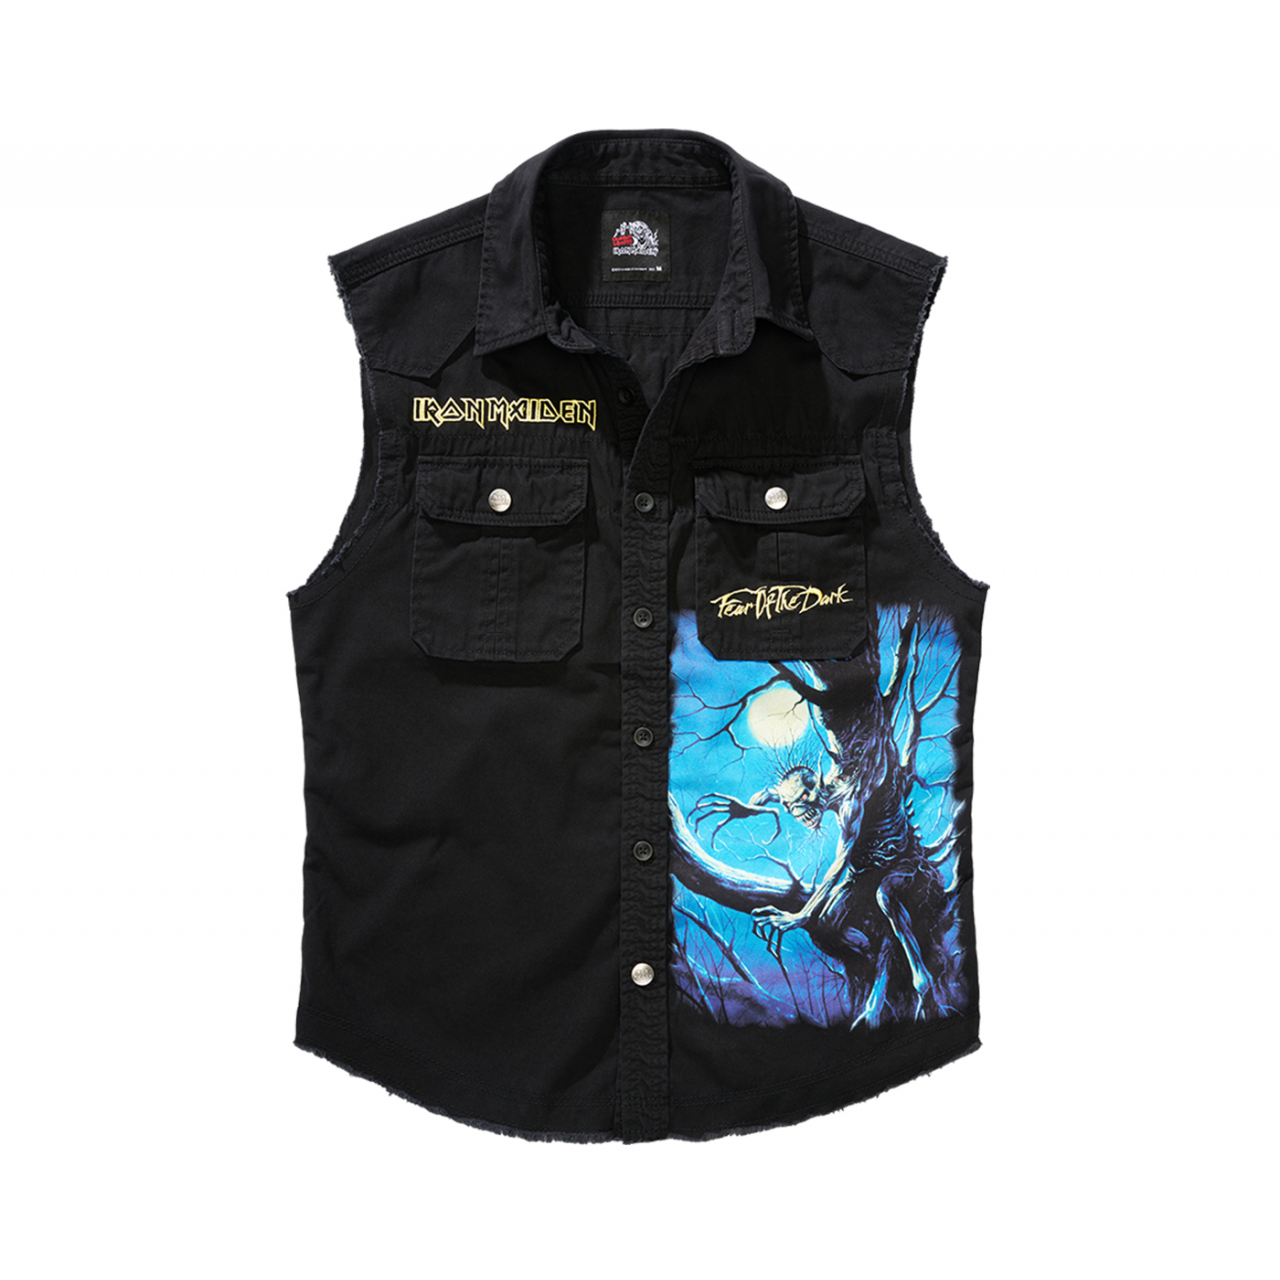 Košile Brandit Iron Maiden Vintage Shirt Sleeveless FOTD - černá, 6XL